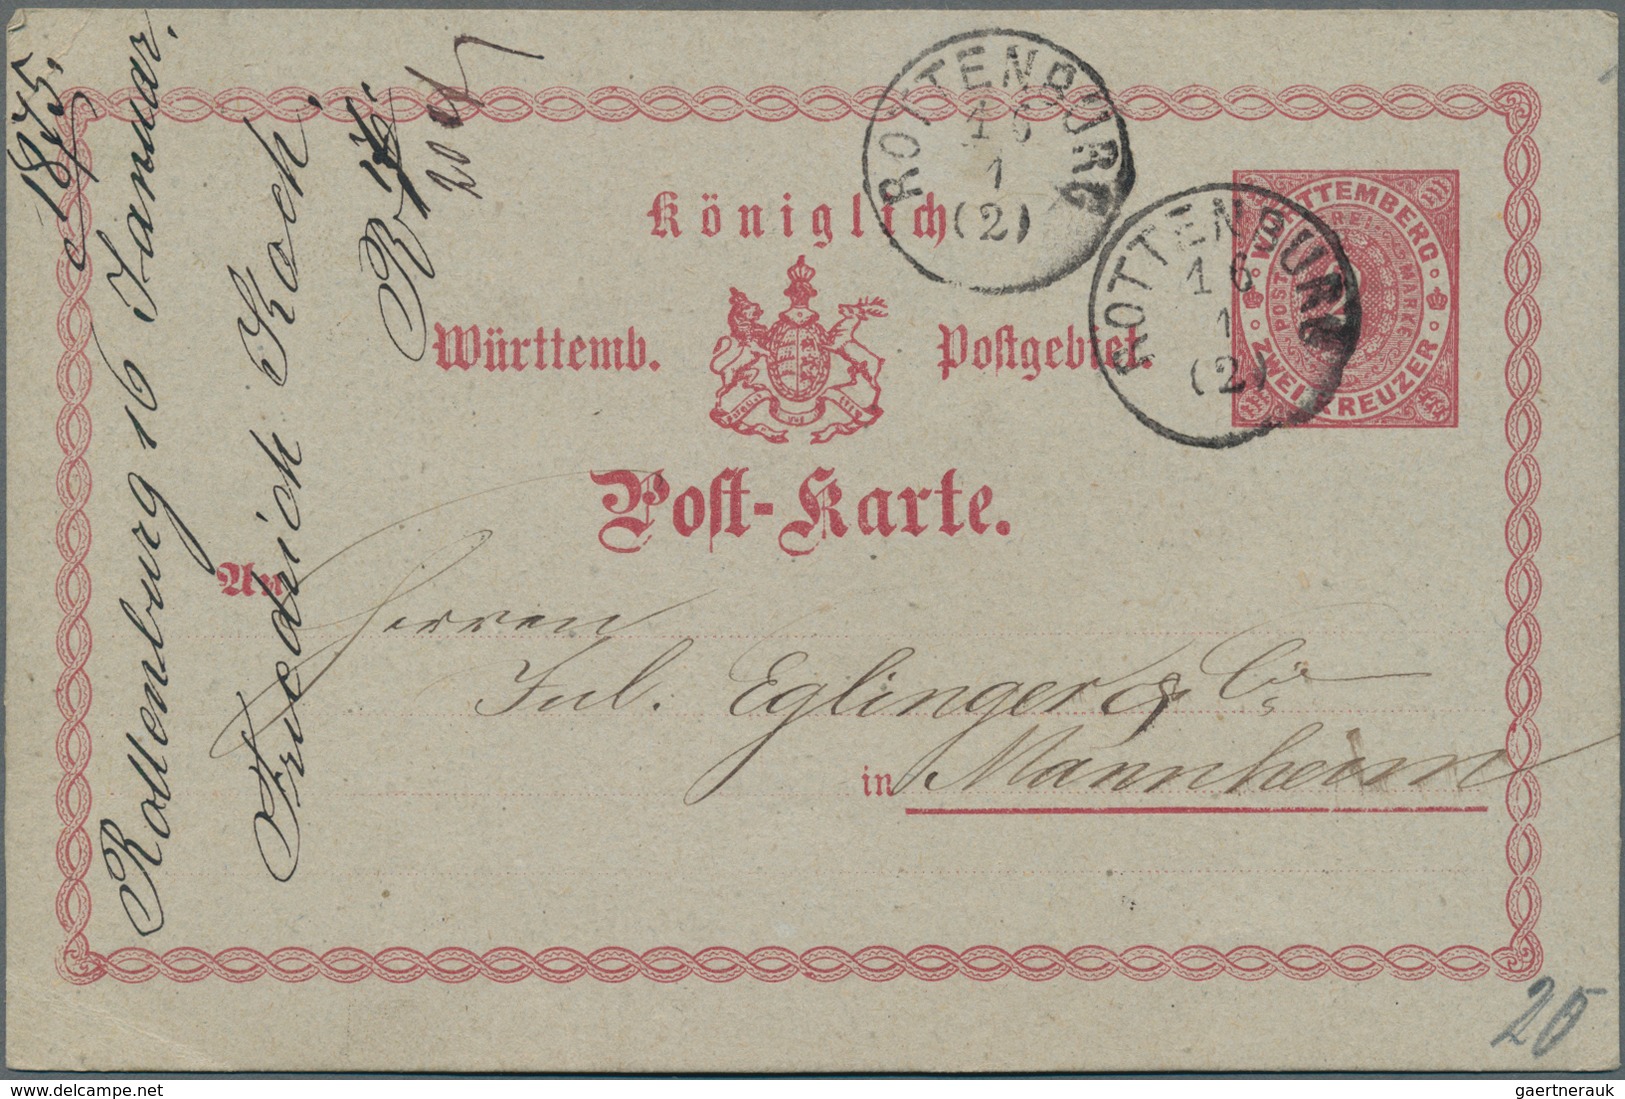 Württemberg - Ganzsachen: 1875/1918, Partie von ca. 50 gebrauchten und ungebrauchten Ganzsachen, dab